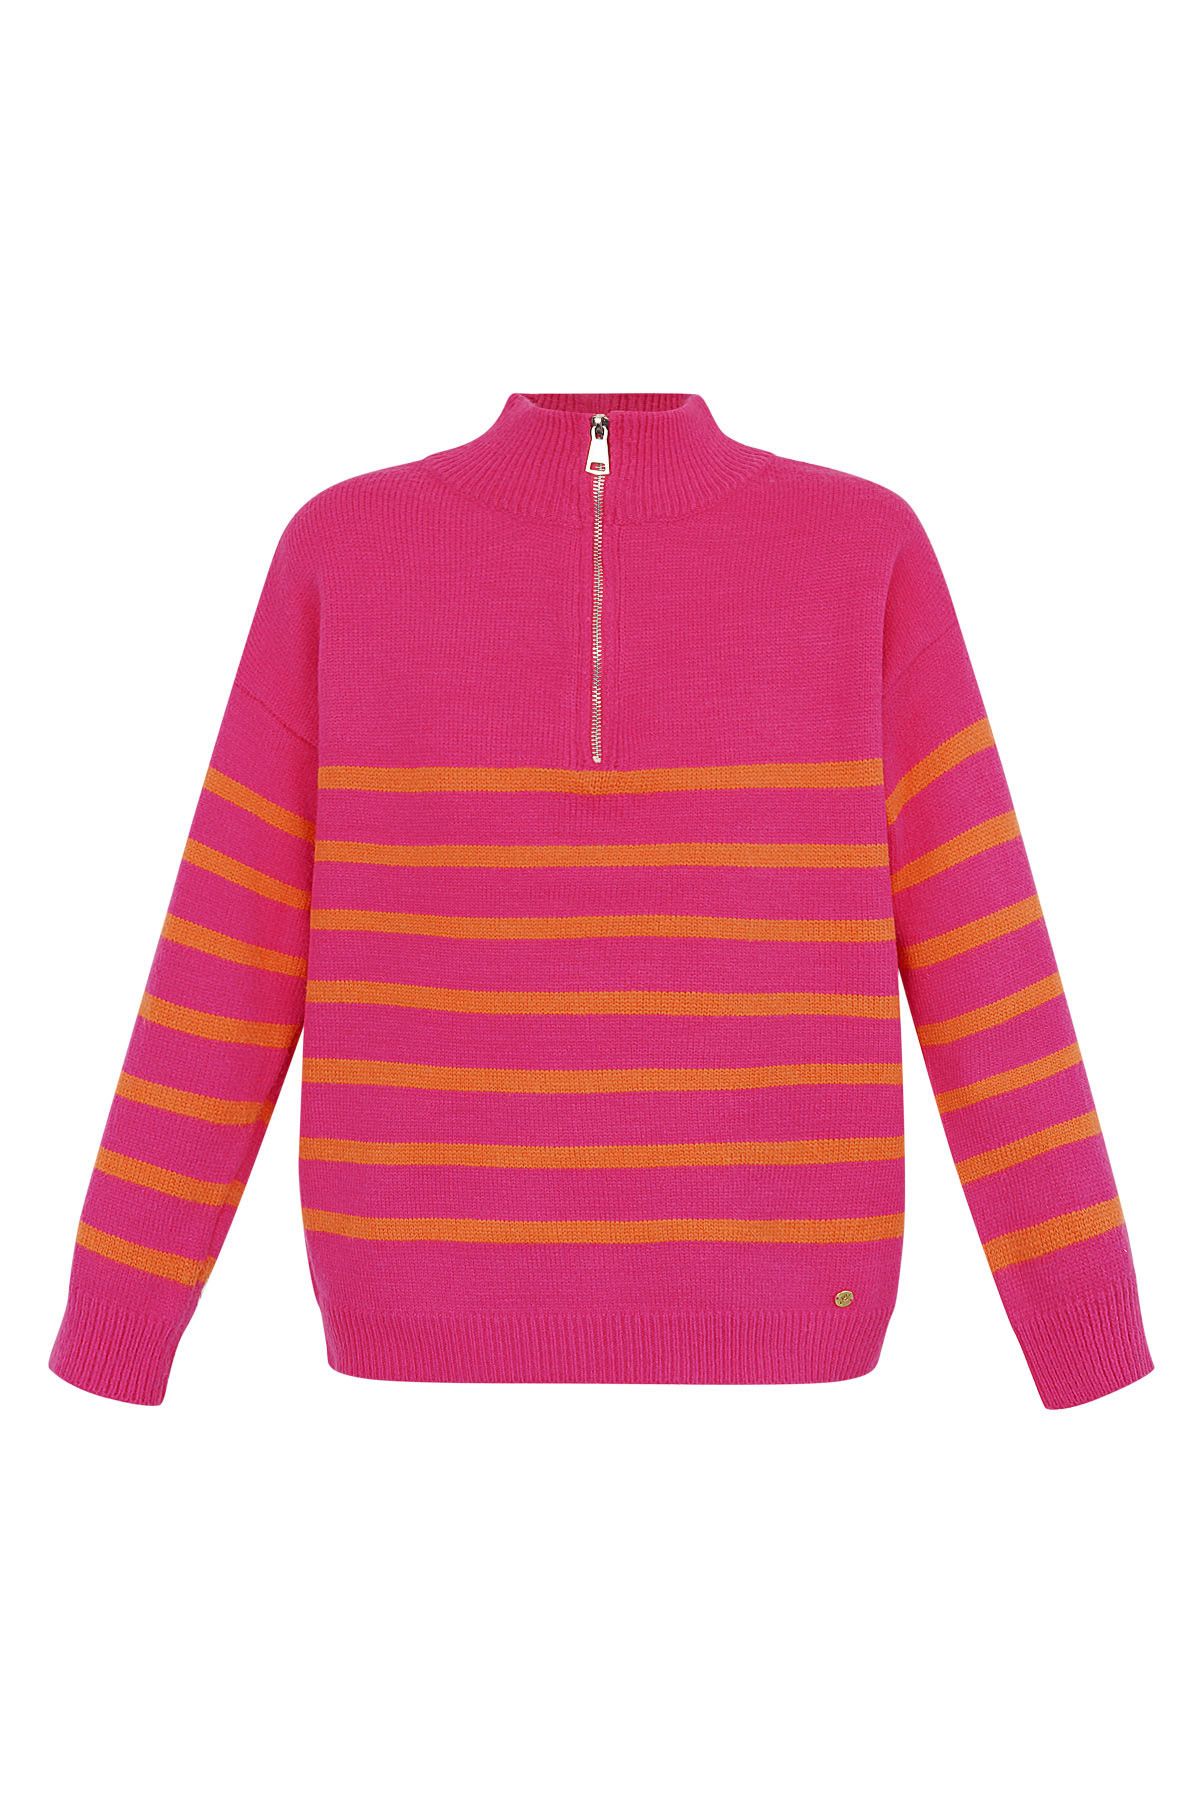 Pull tricoté rayé avec fermeture éclair - rose orange